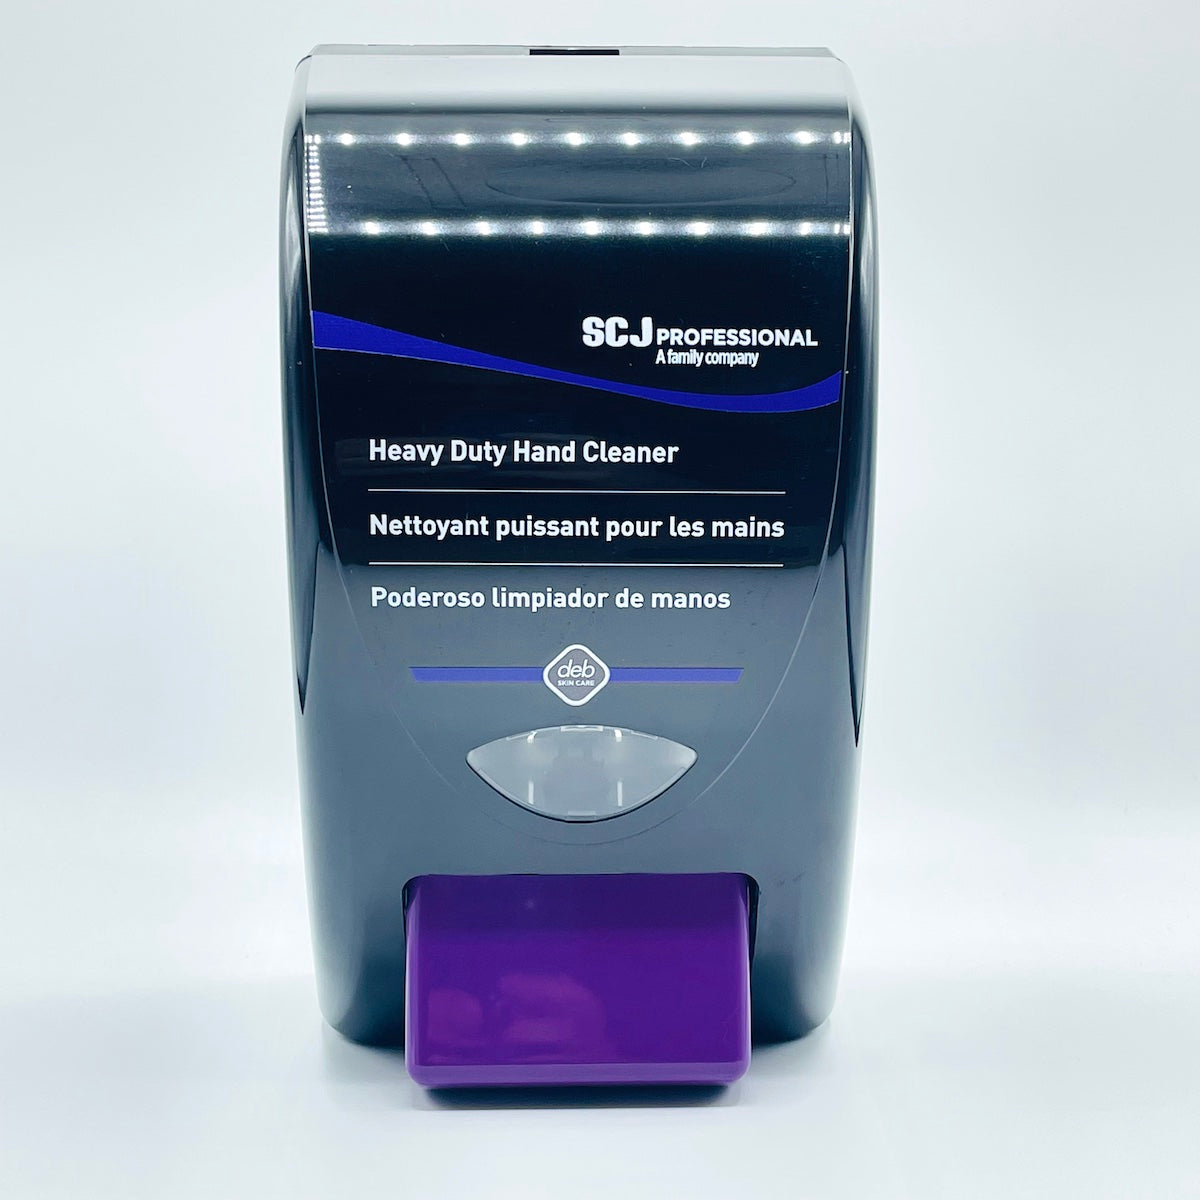 SC Johnson Heavy Duty Hand Cleaner Dispenser